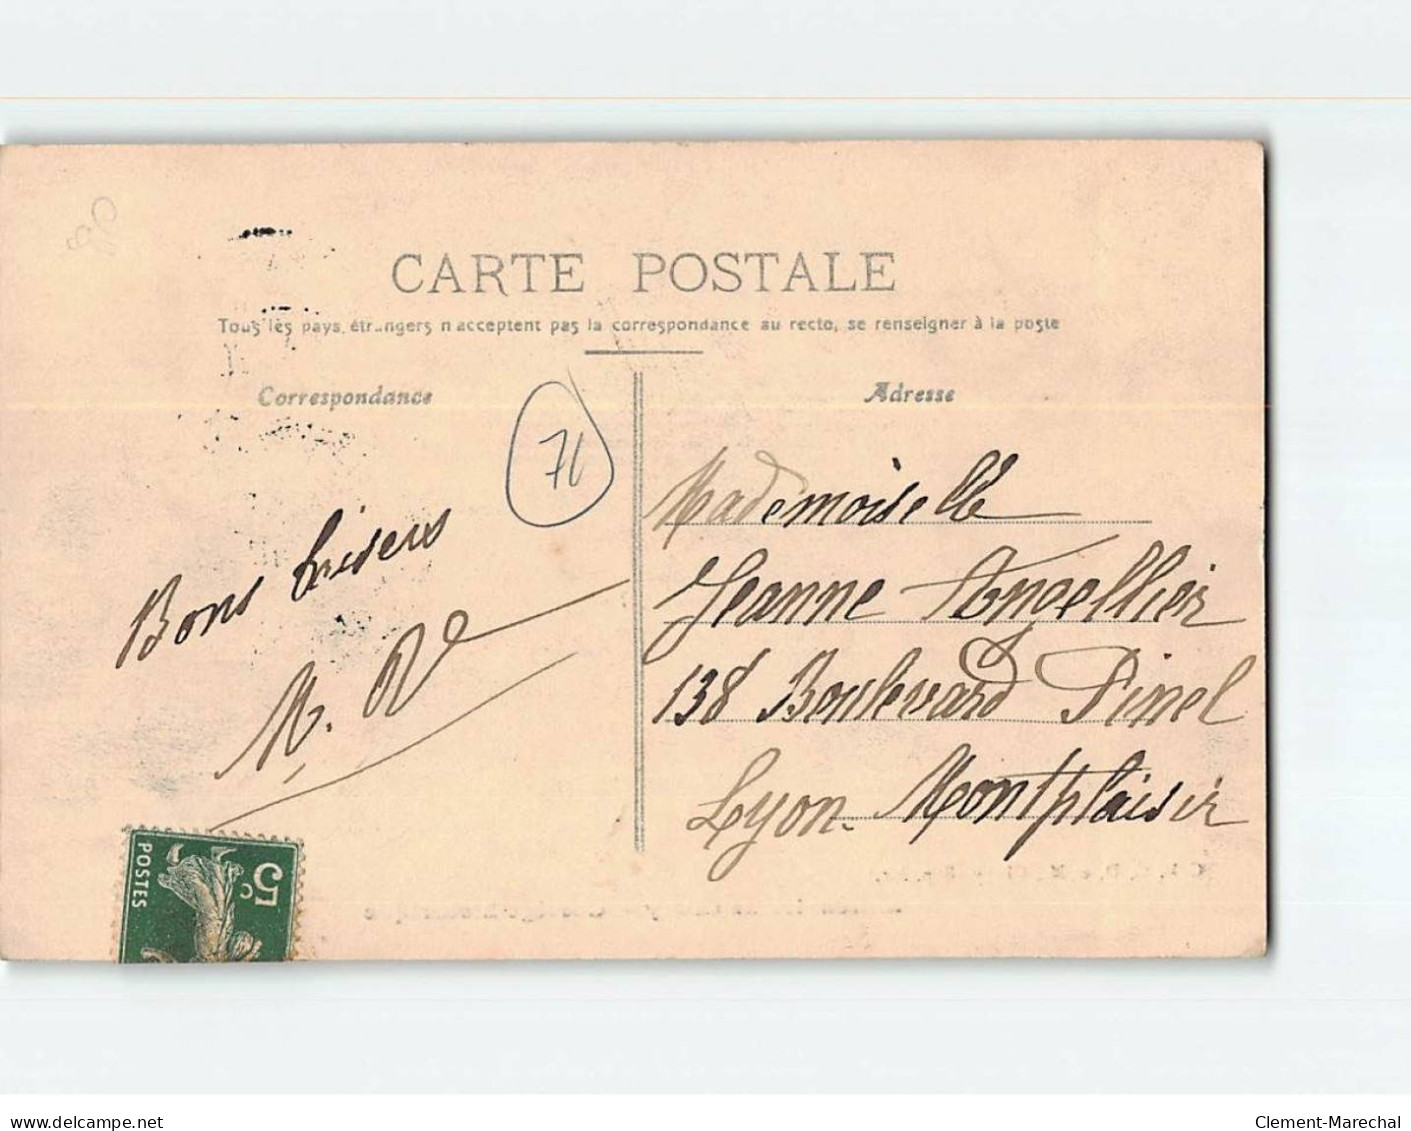 CLUNY : Le Millénaire En 1910, Cortège Historique - Très Bon état - Cluny